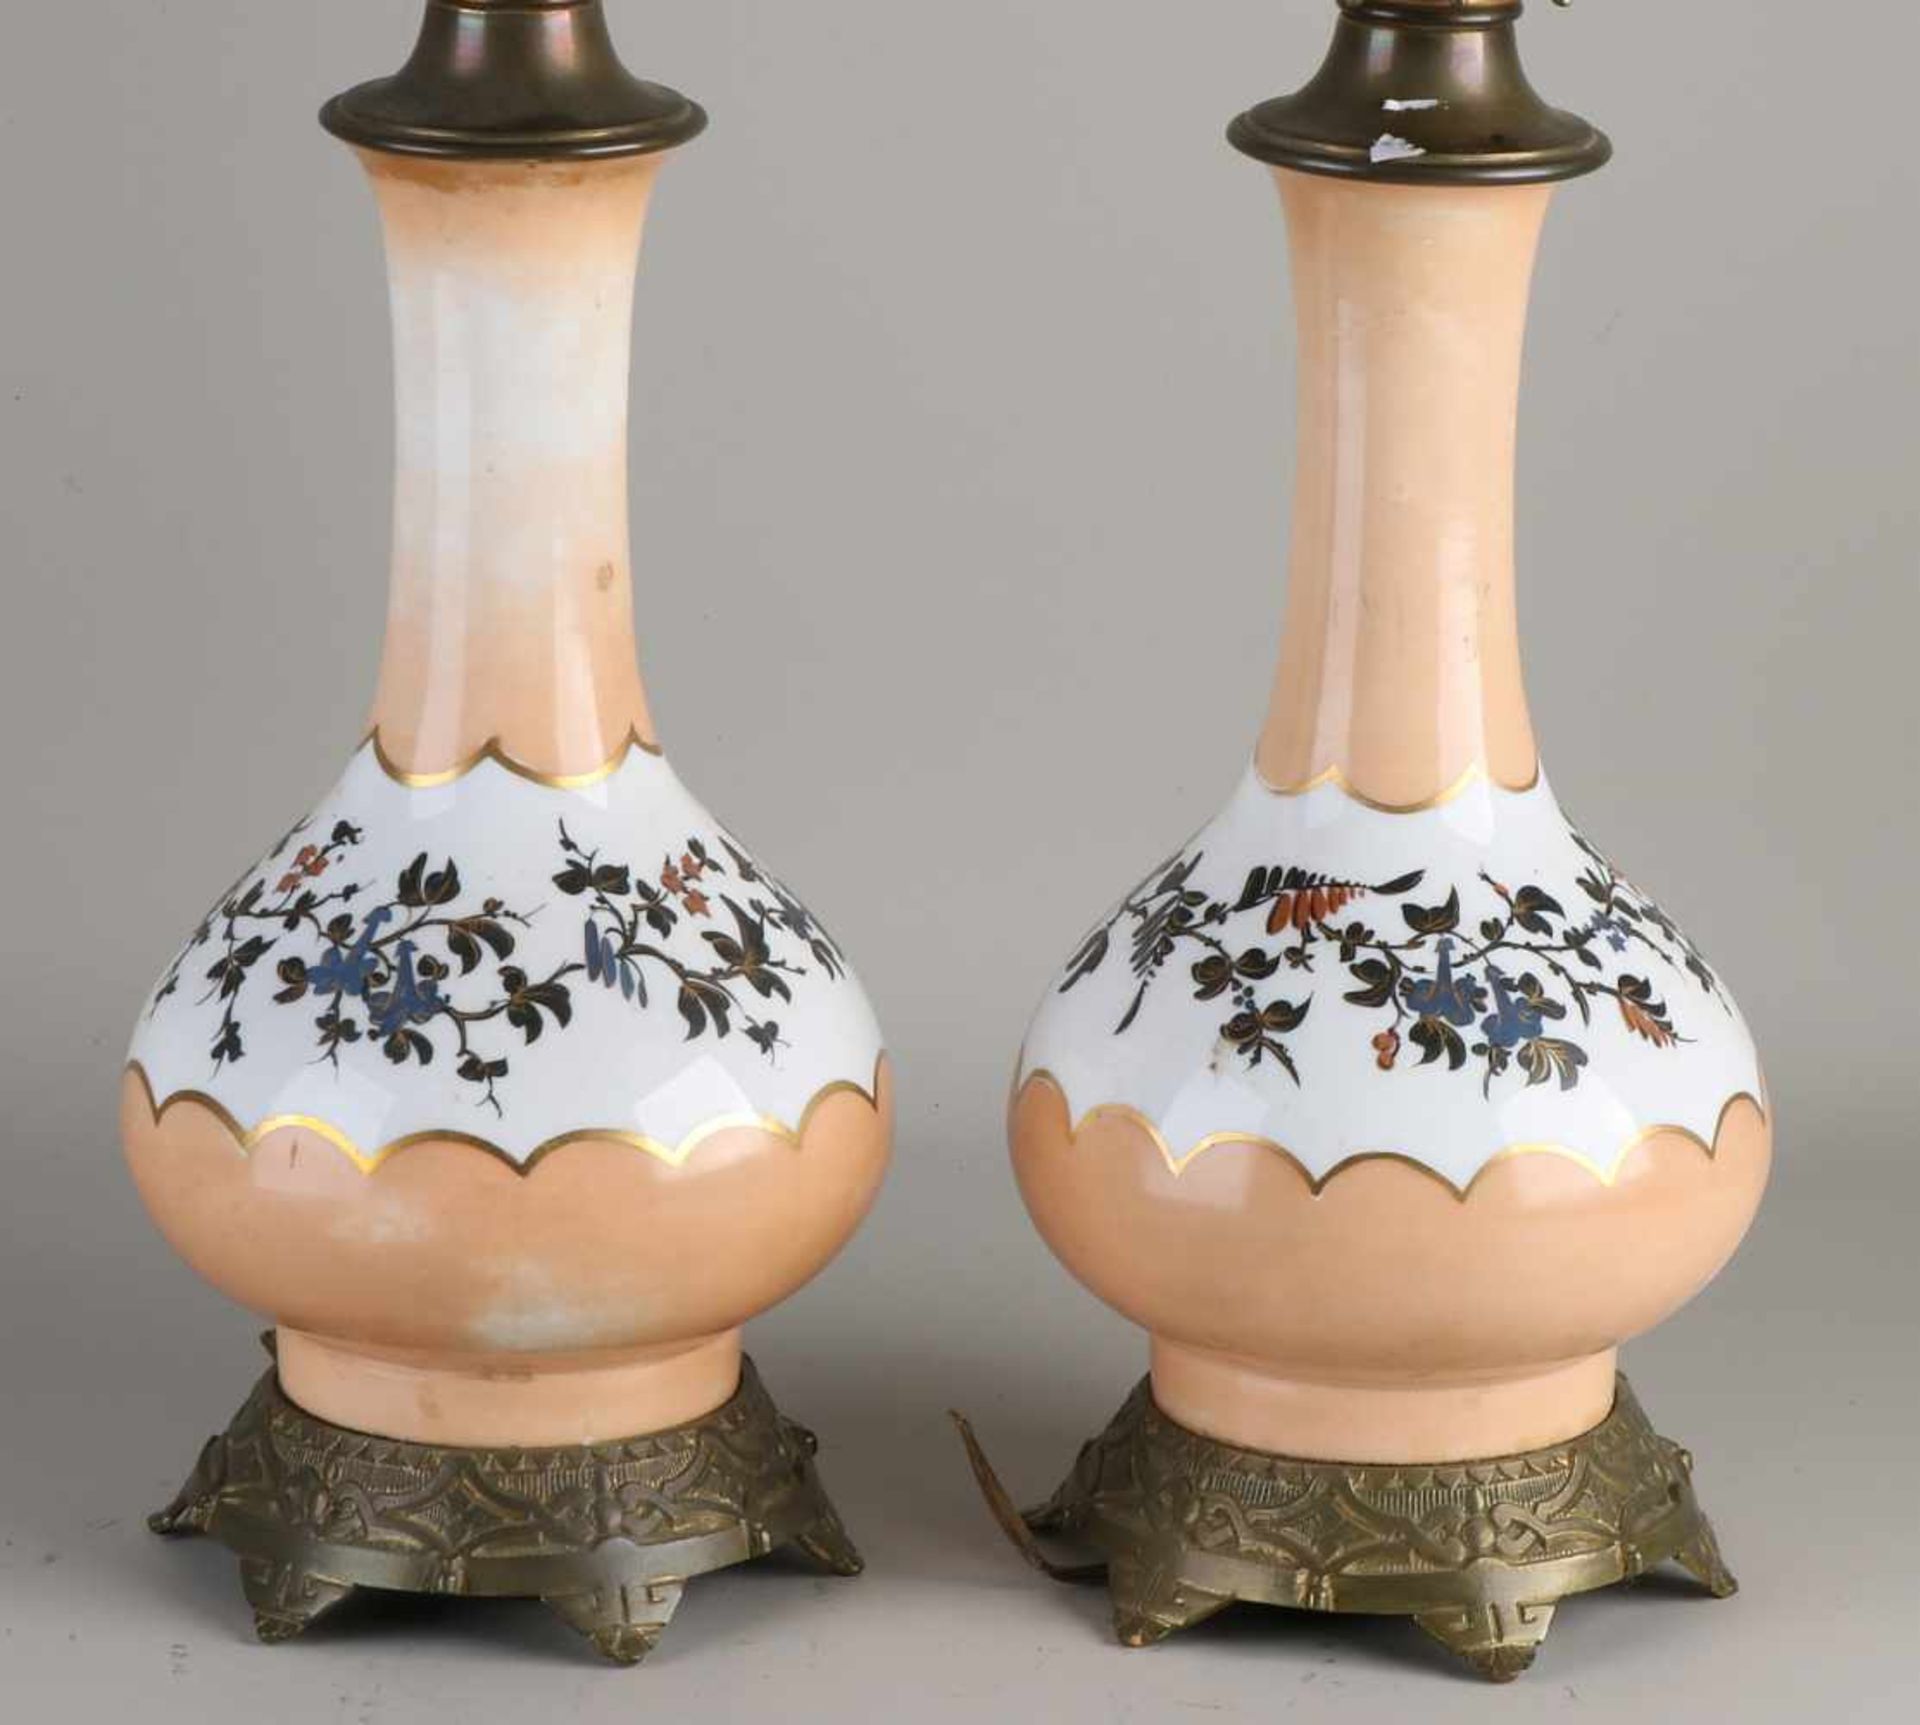 Zwei antike Porzellantischlampen. Elektrifizierte Petroleumlampen mit Messing- und Blumenbemalung. - Bild 2 aus 2